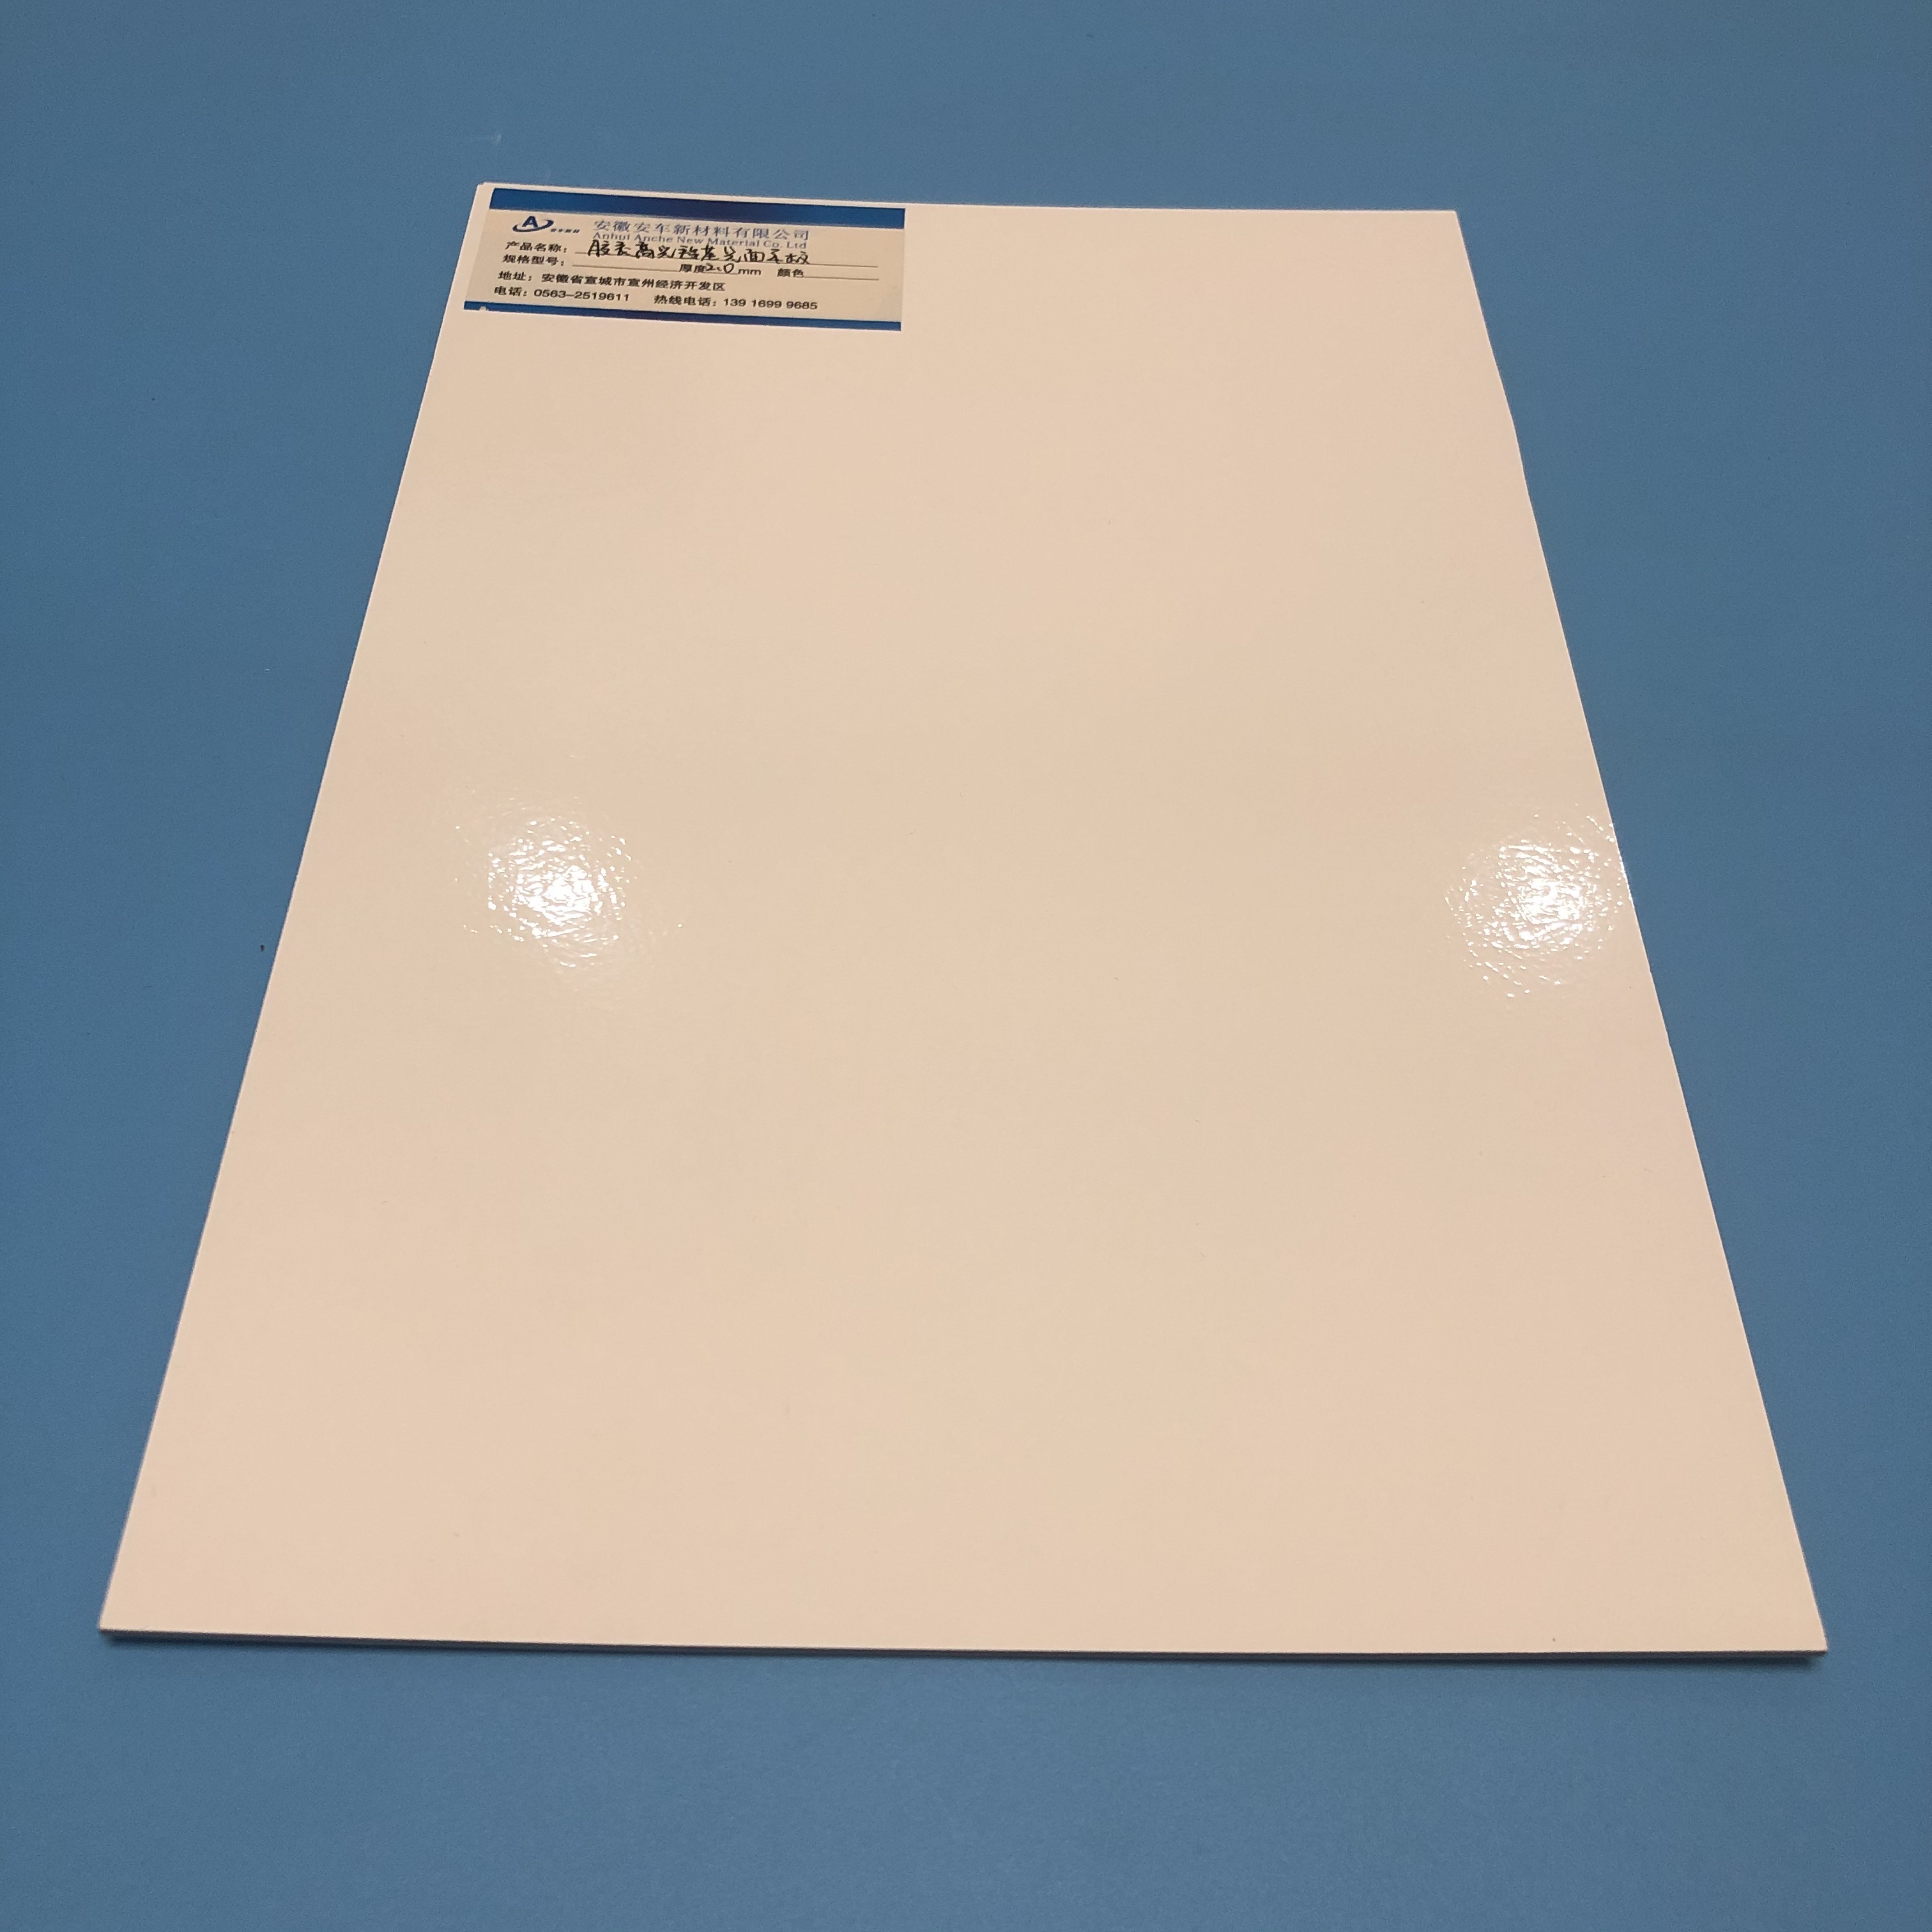 High Gloss Fiberglass FRP Flat Sheet in Roll Insulated Rough Frp Panel Sheets